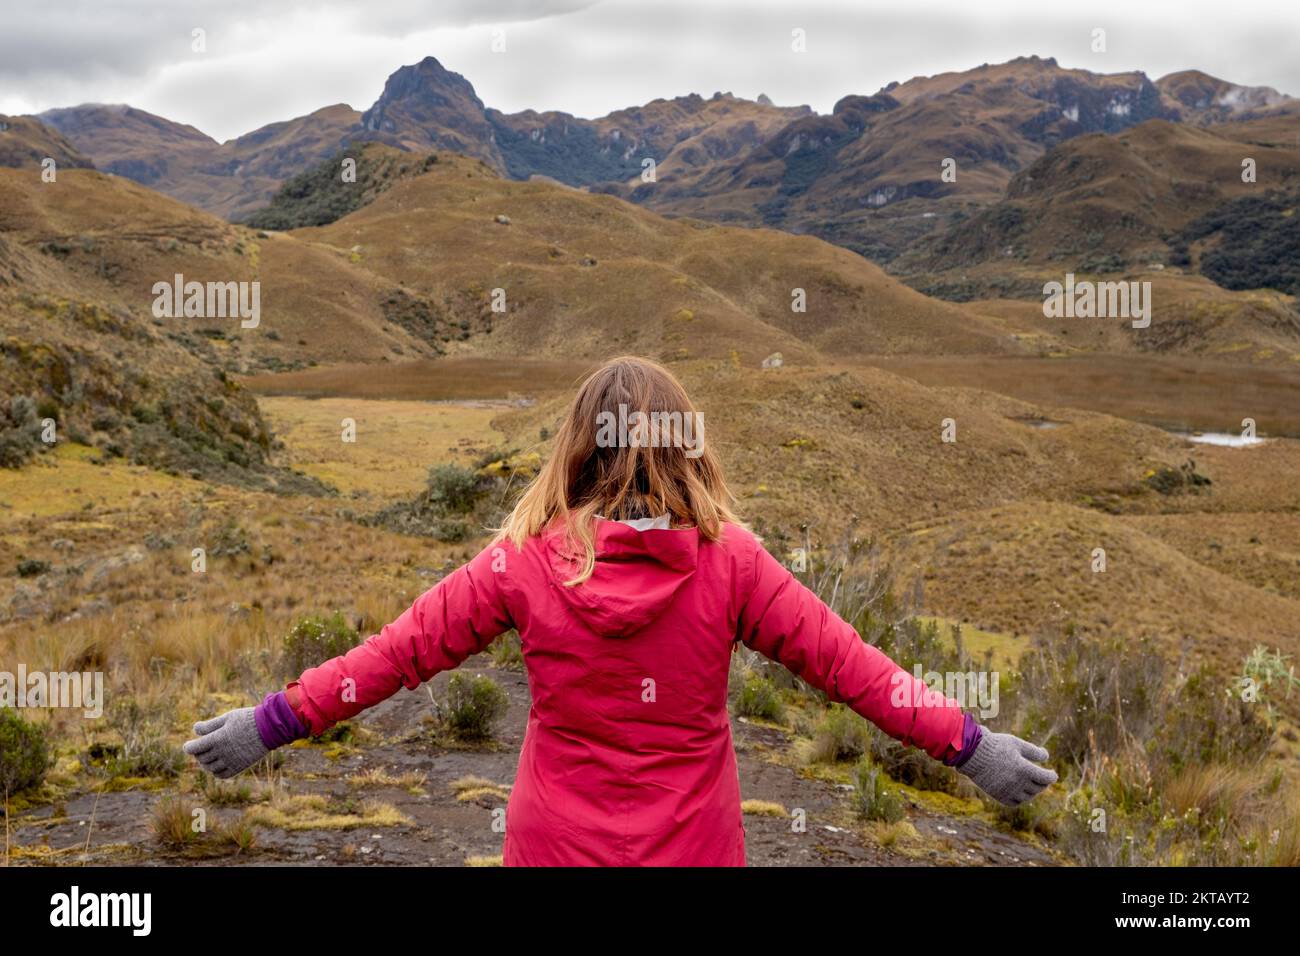 Un randonneur à bras ouverts qui jouit d'un paysage à couper le souffle dans le parc national de cajas, dans les hauts plateaux de l'Equateur, dans les Andes tropicales. Banque D'Images